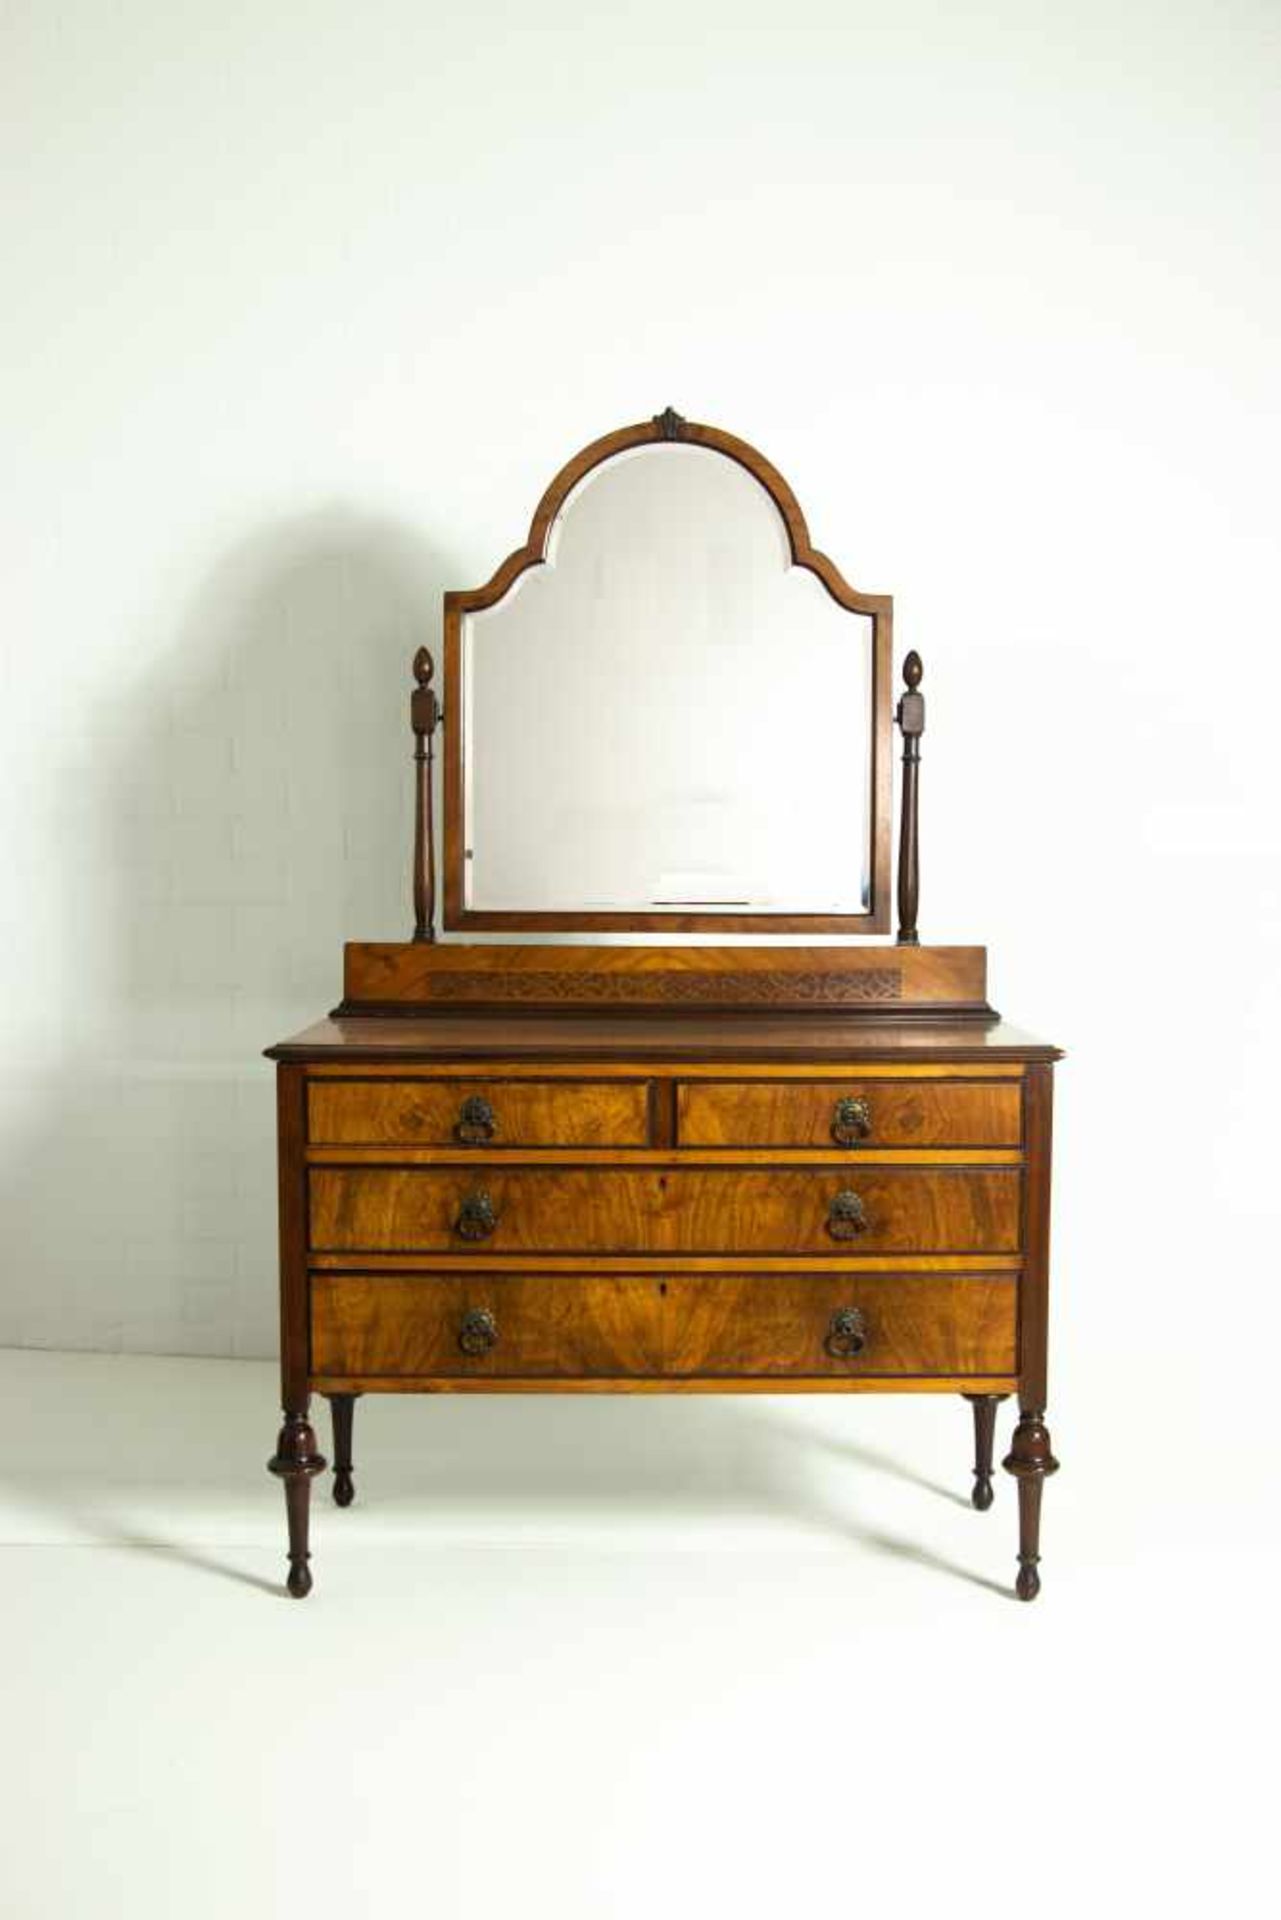 A 19th century mahogany and walnut dresserA 19th century mahogany and walnut dresser170 x 106.5 x 50